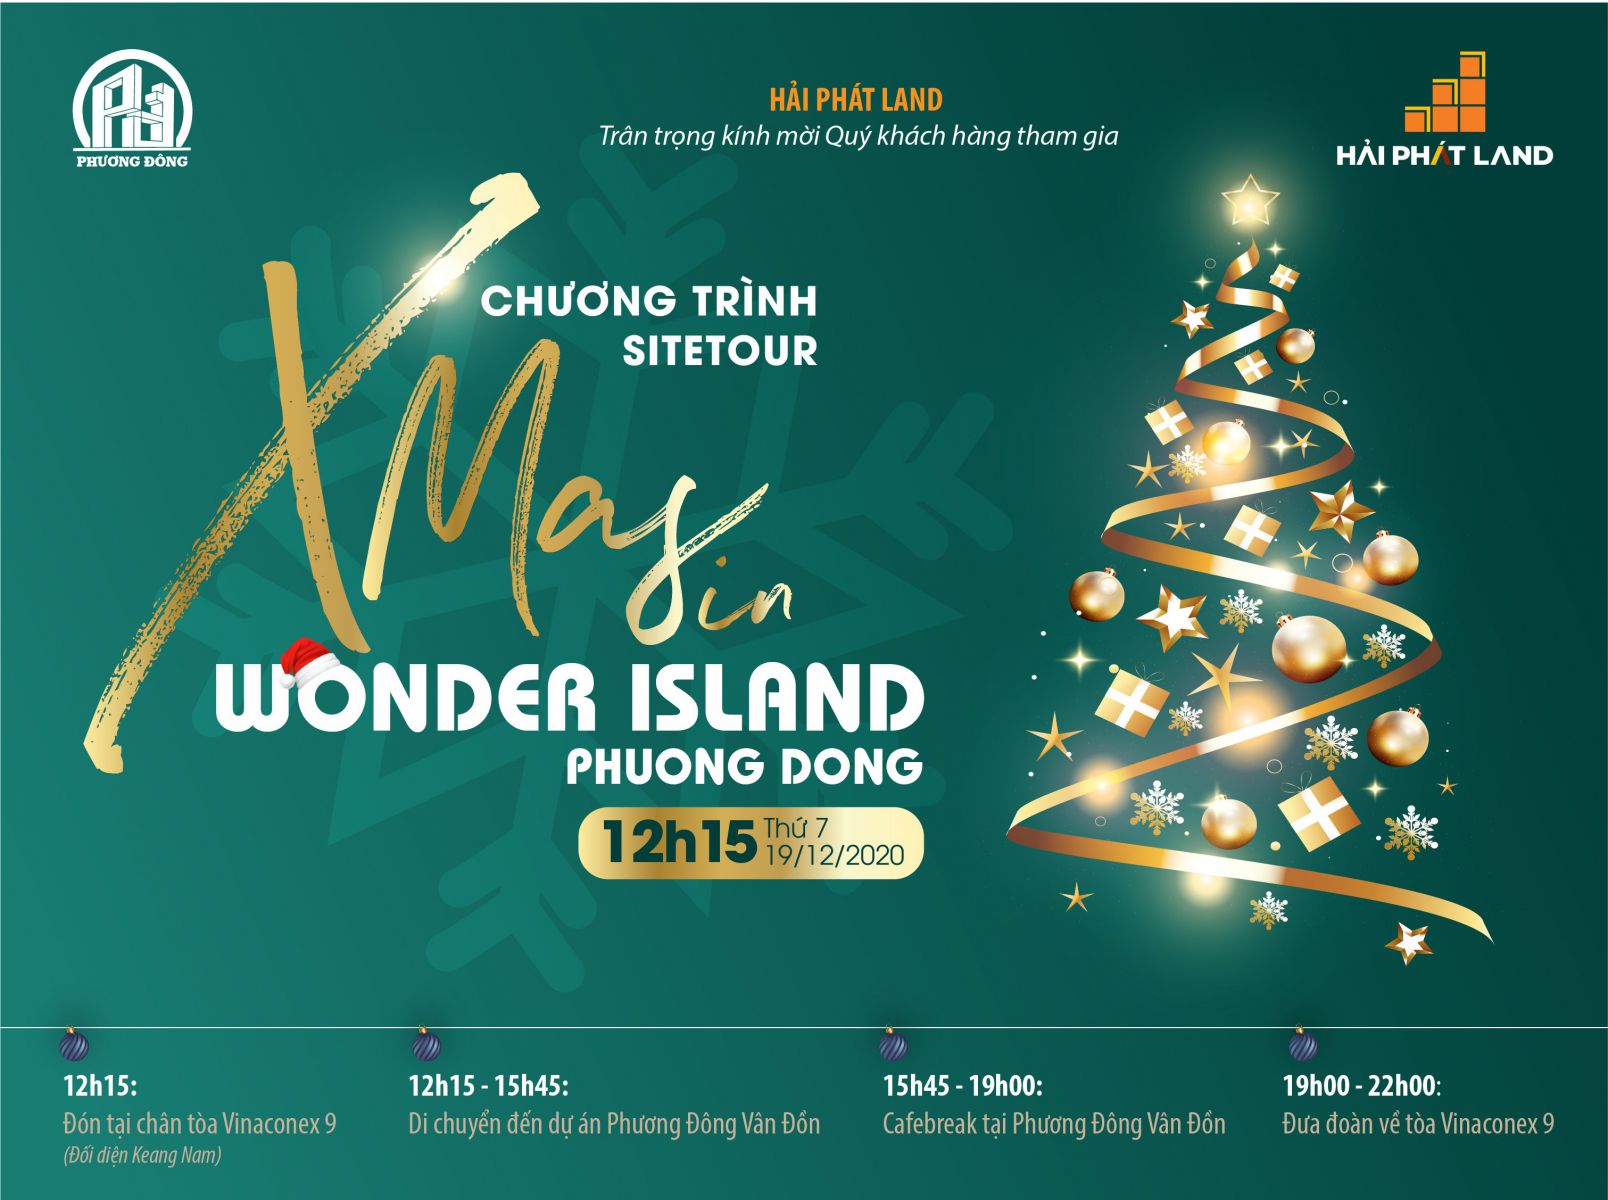 Chương trình Sitetour dự án Phương Đông Vân Đồn - Wonder Island - XMas in Wonder Island Phuong Dong